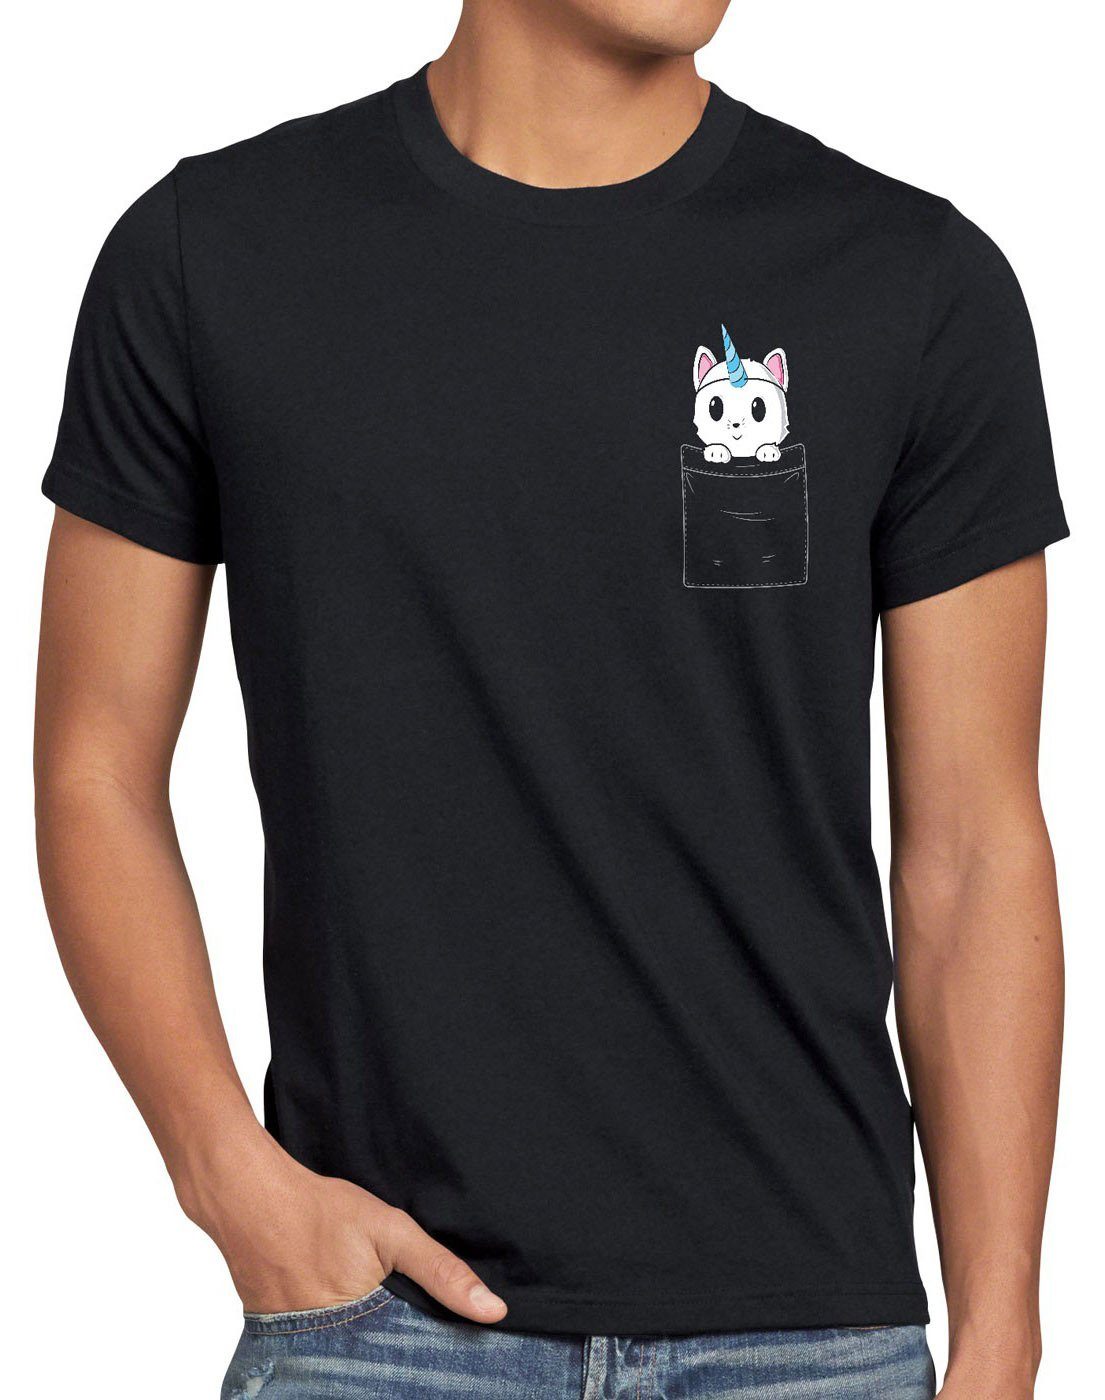 Brusttasche style3 T-Shirt lustig Katze Herren Pocket Fun Unicorn tasche Print-Shirt Cat schwarz Einhorn